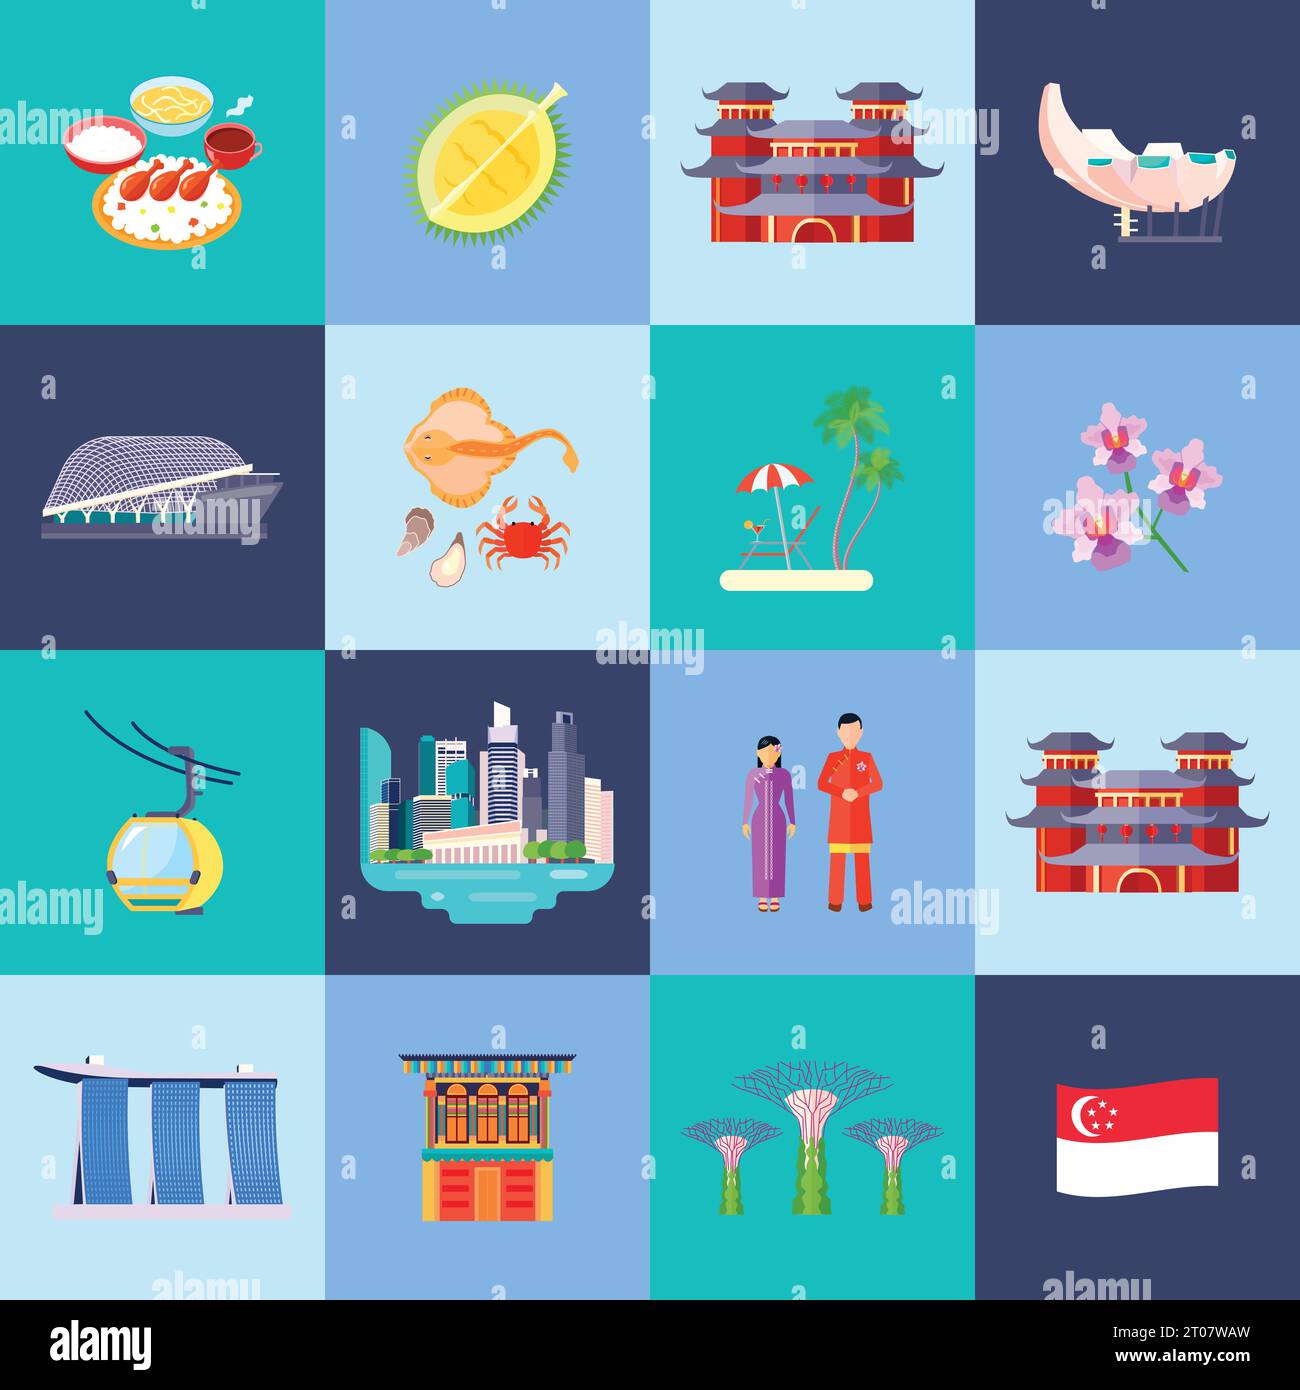 Singapur Kultur farbige flache Ikone mit Hauptattraktionen in kleinen Kreisen Vektor-Illustration gesetzt Stock Vektor